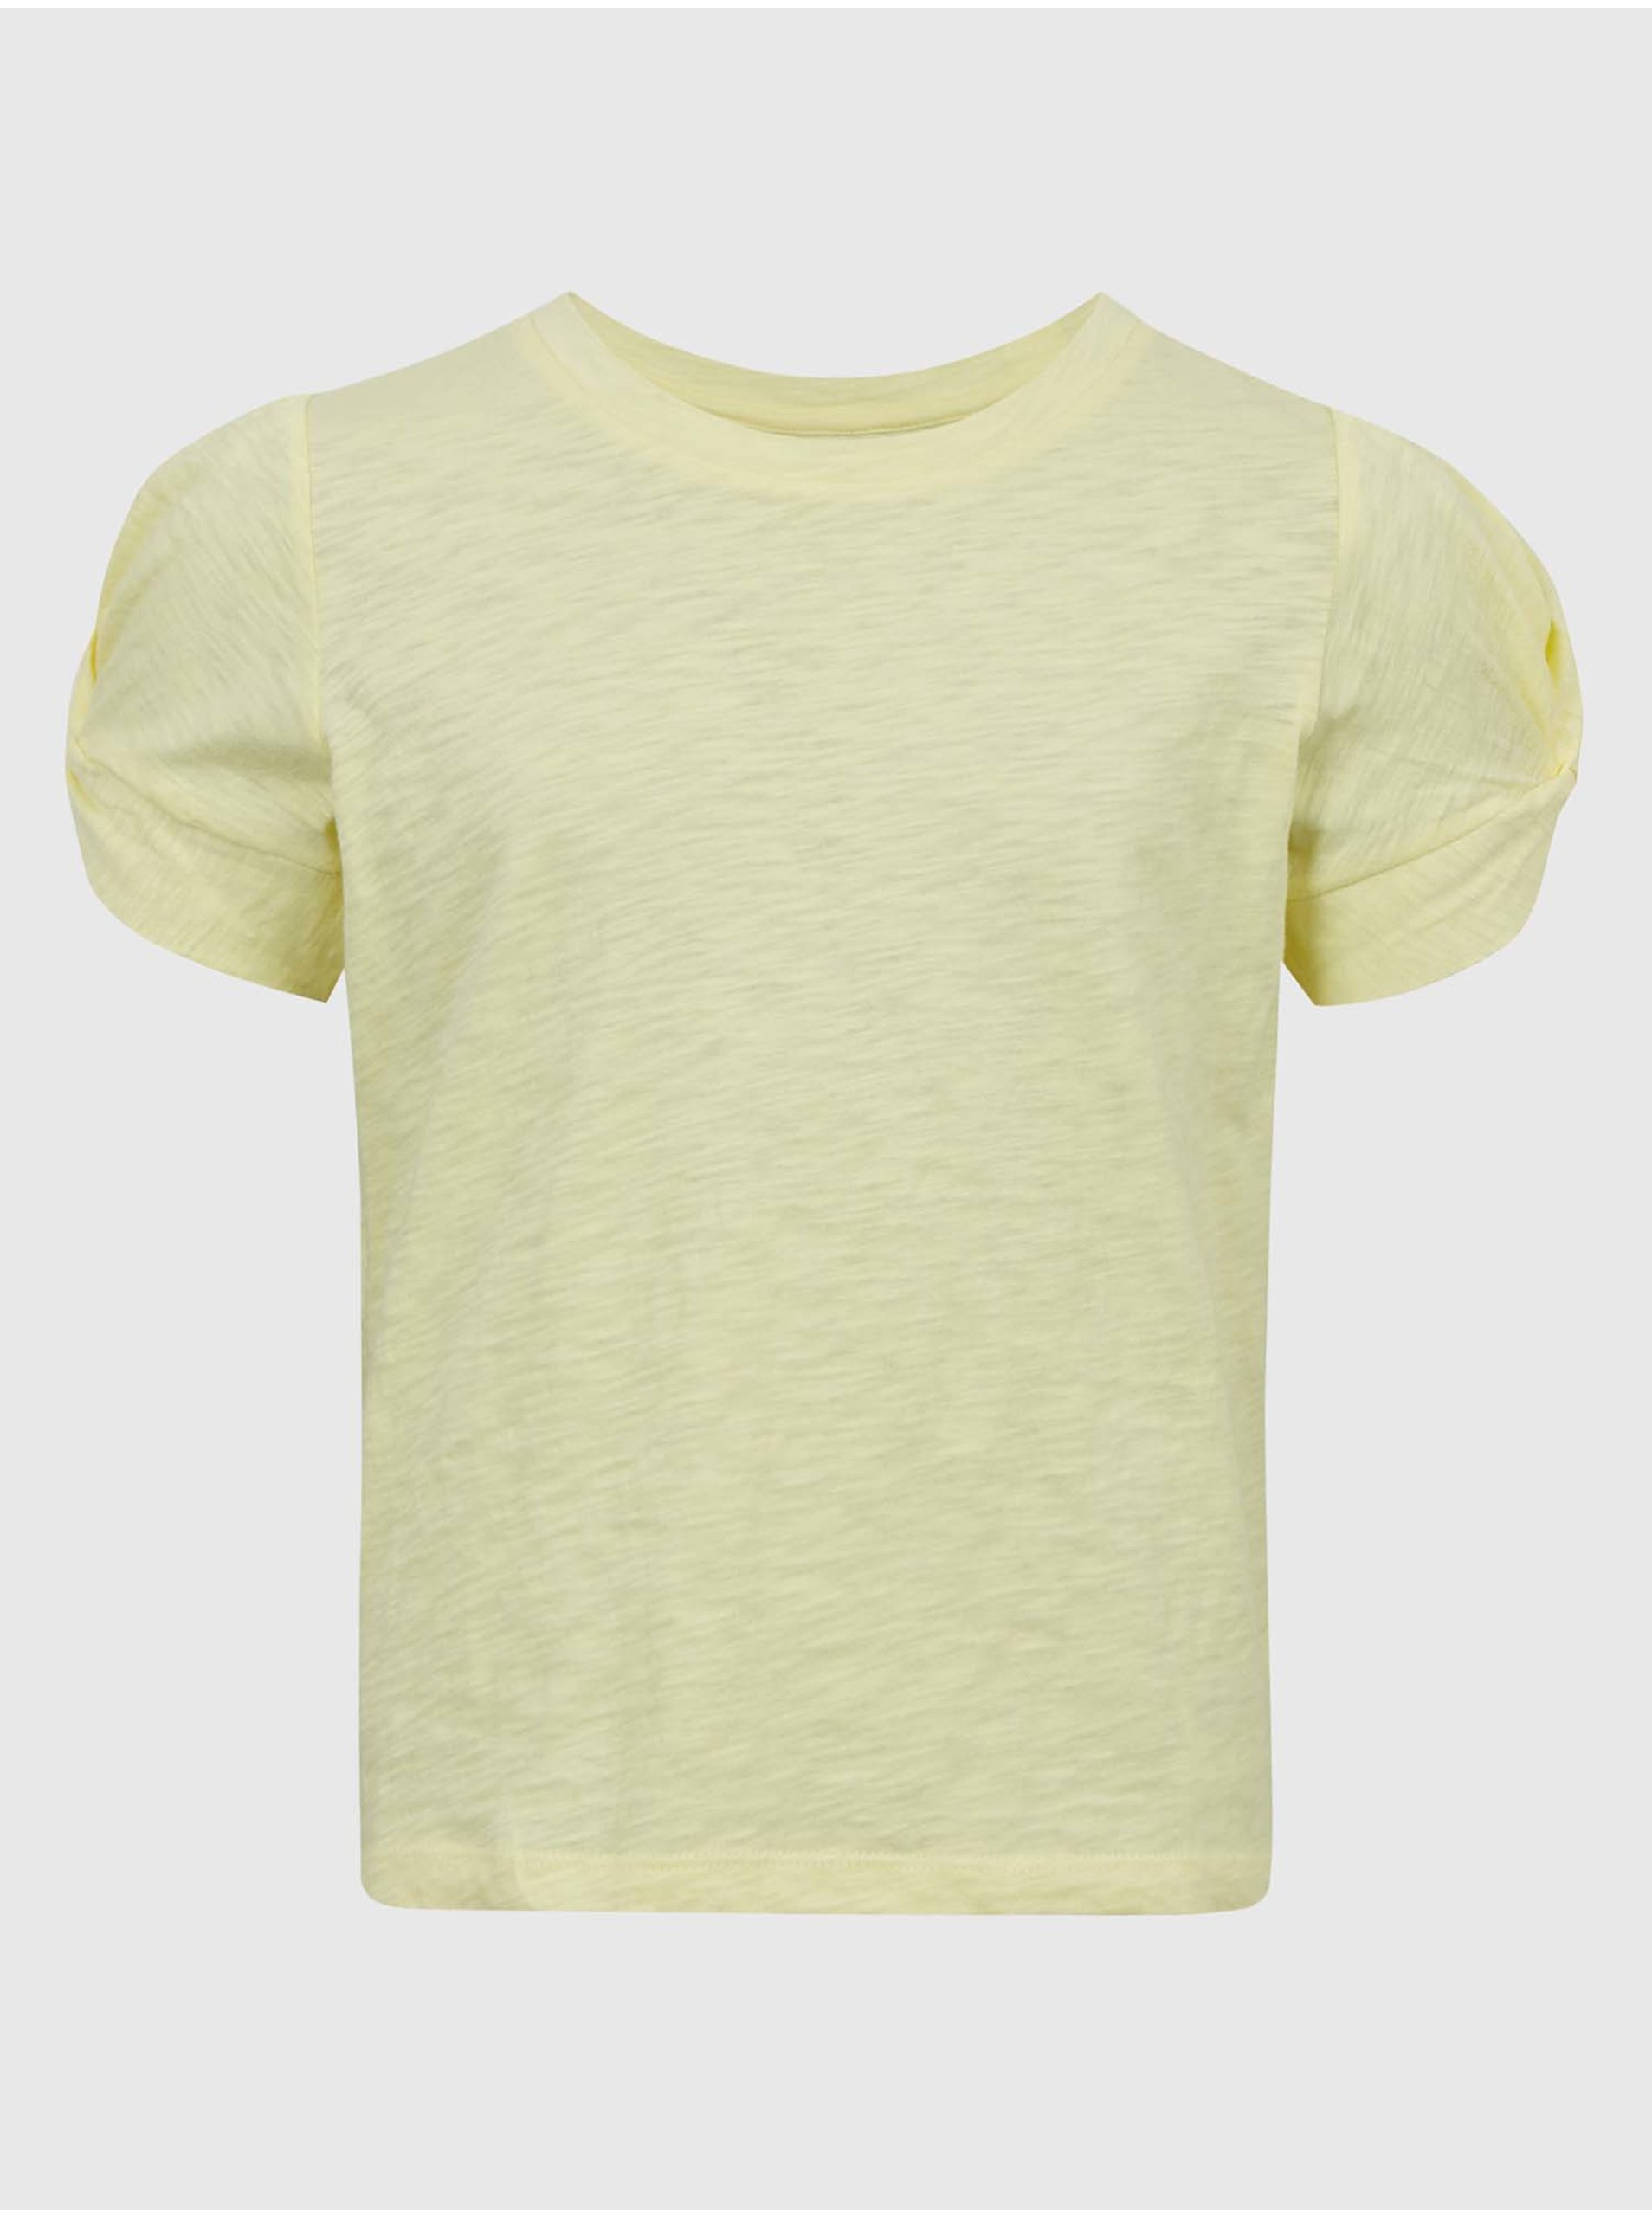 Lacno Žlté dievčenské tričko GAP twist